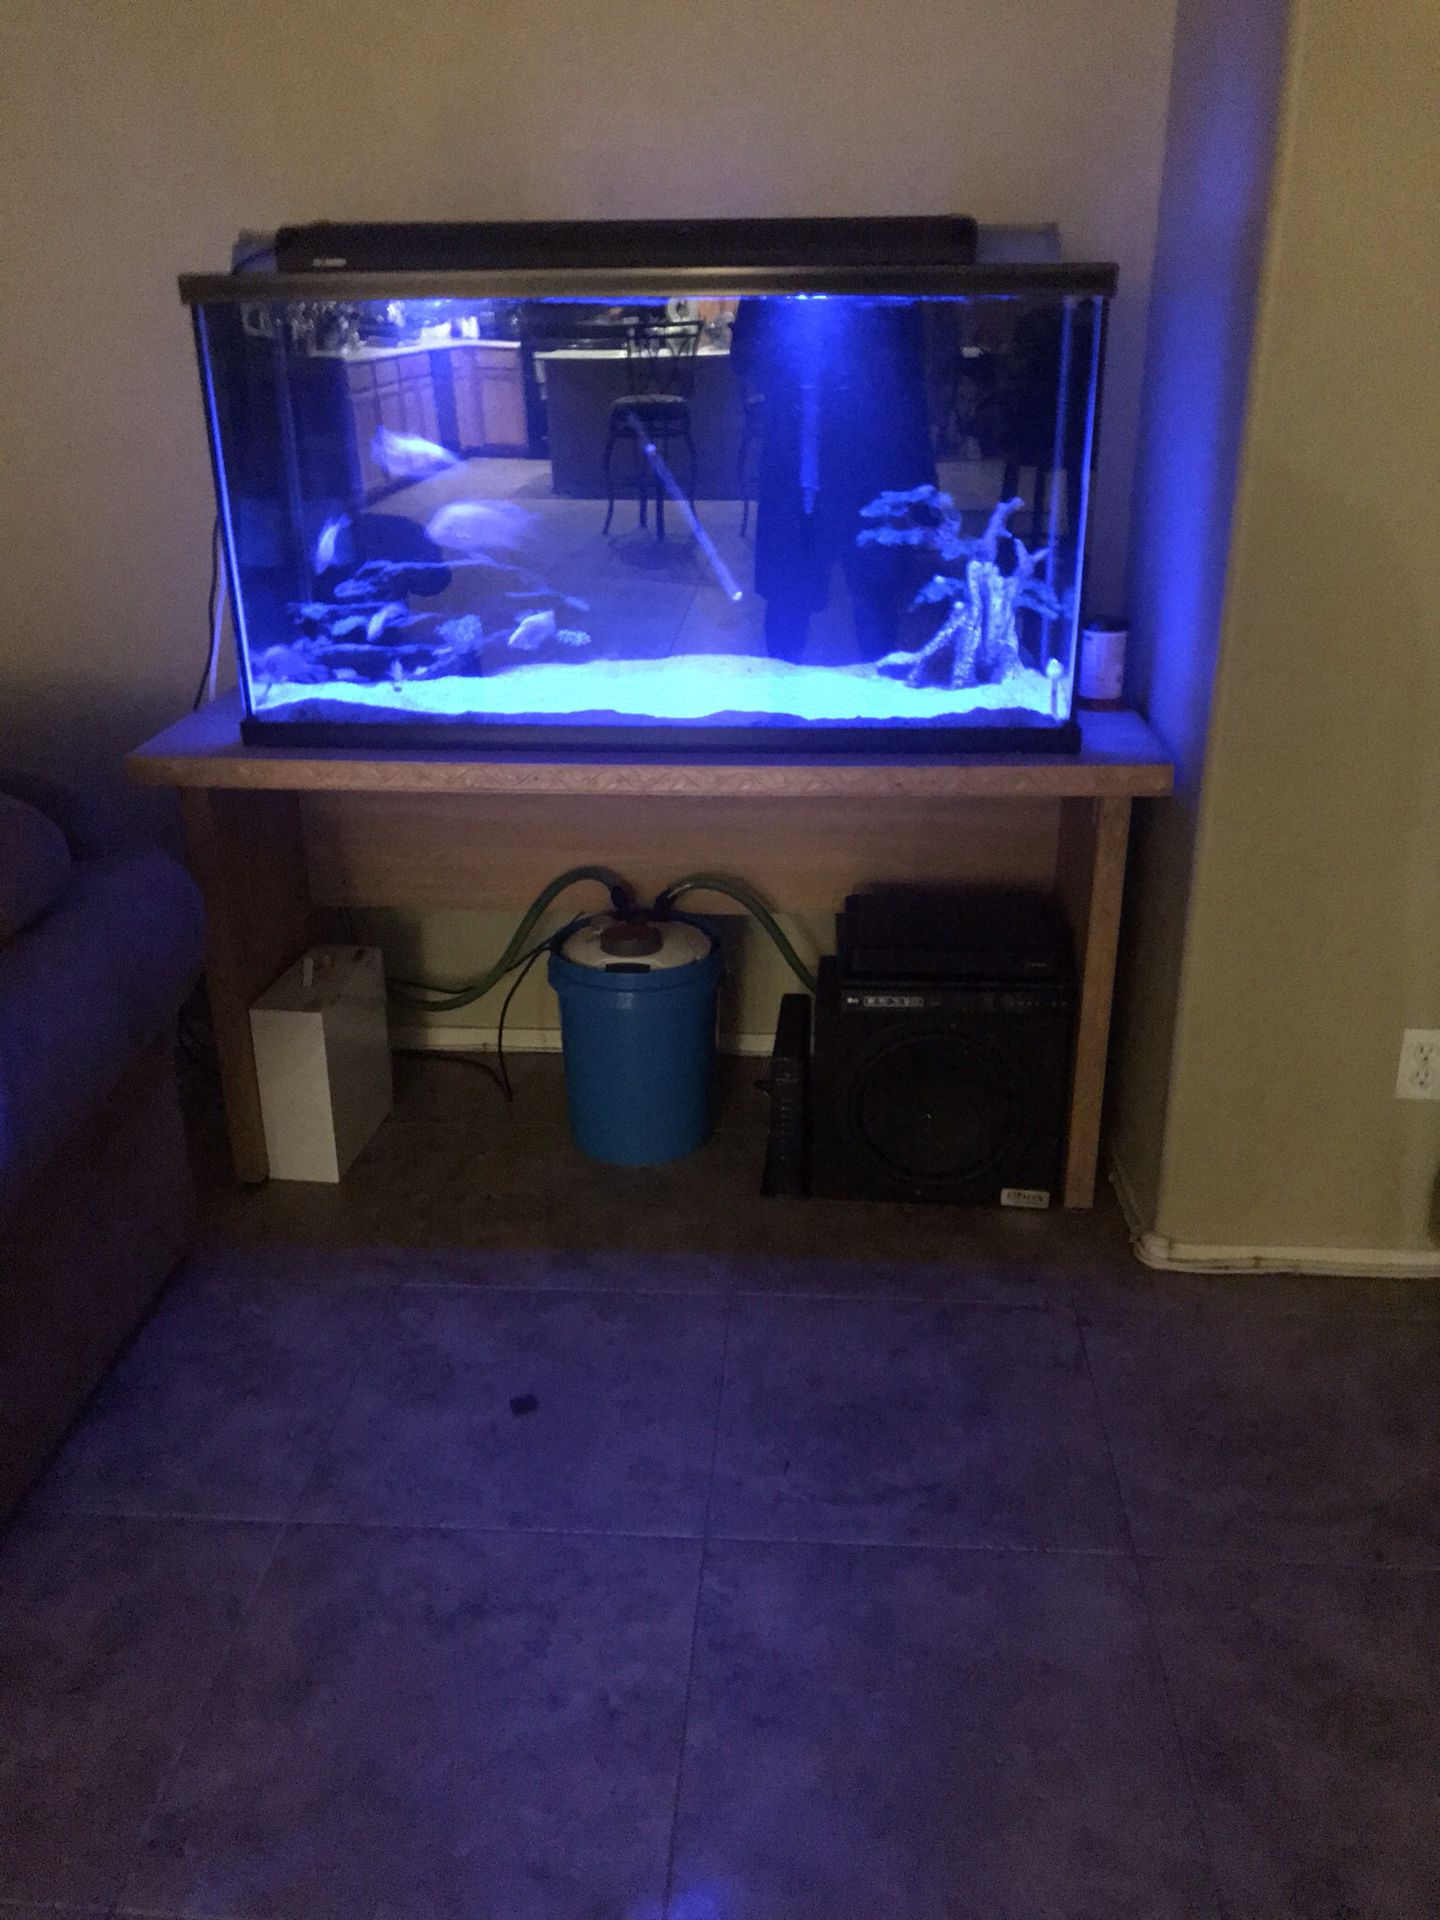 100 gallon aquarium